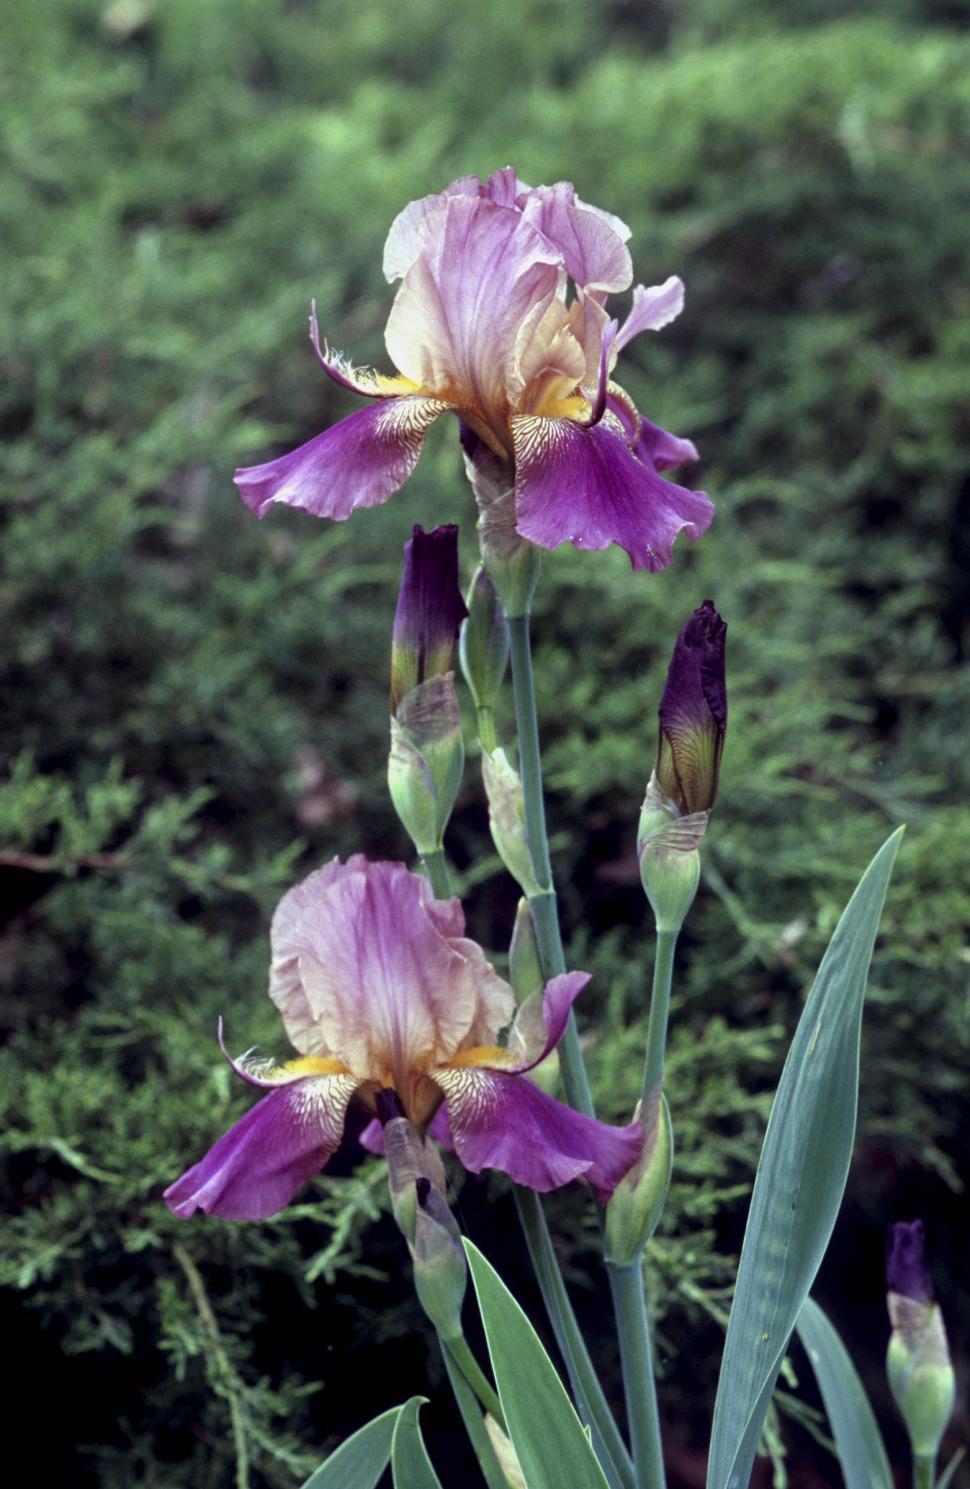 Free Image of iris flowers 